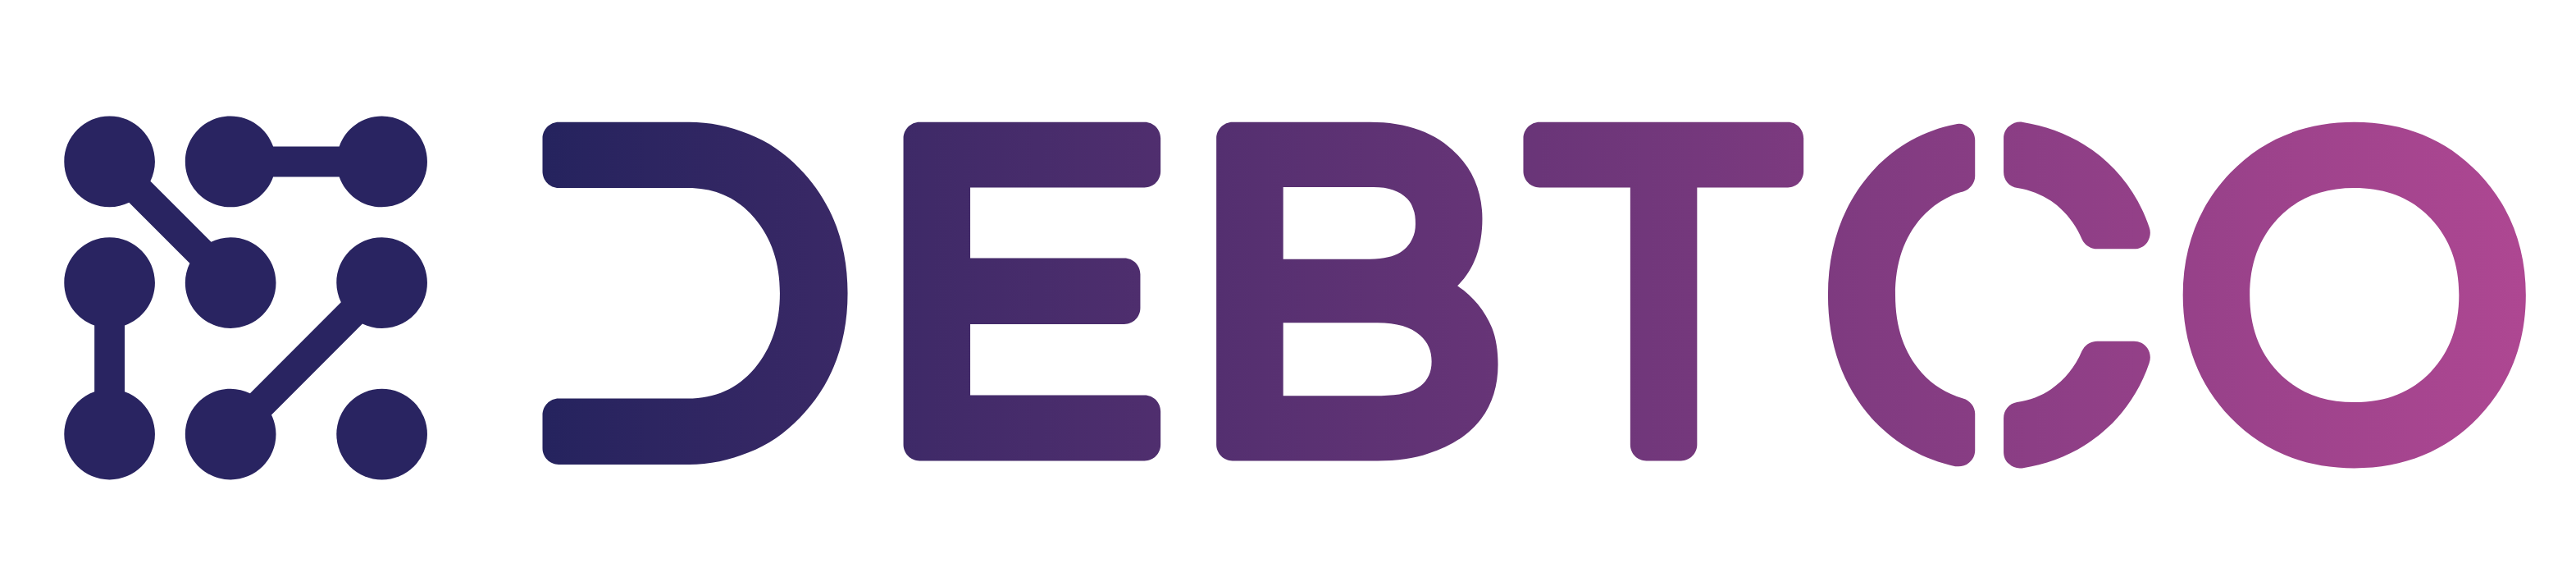 DebtCo Logo Colour